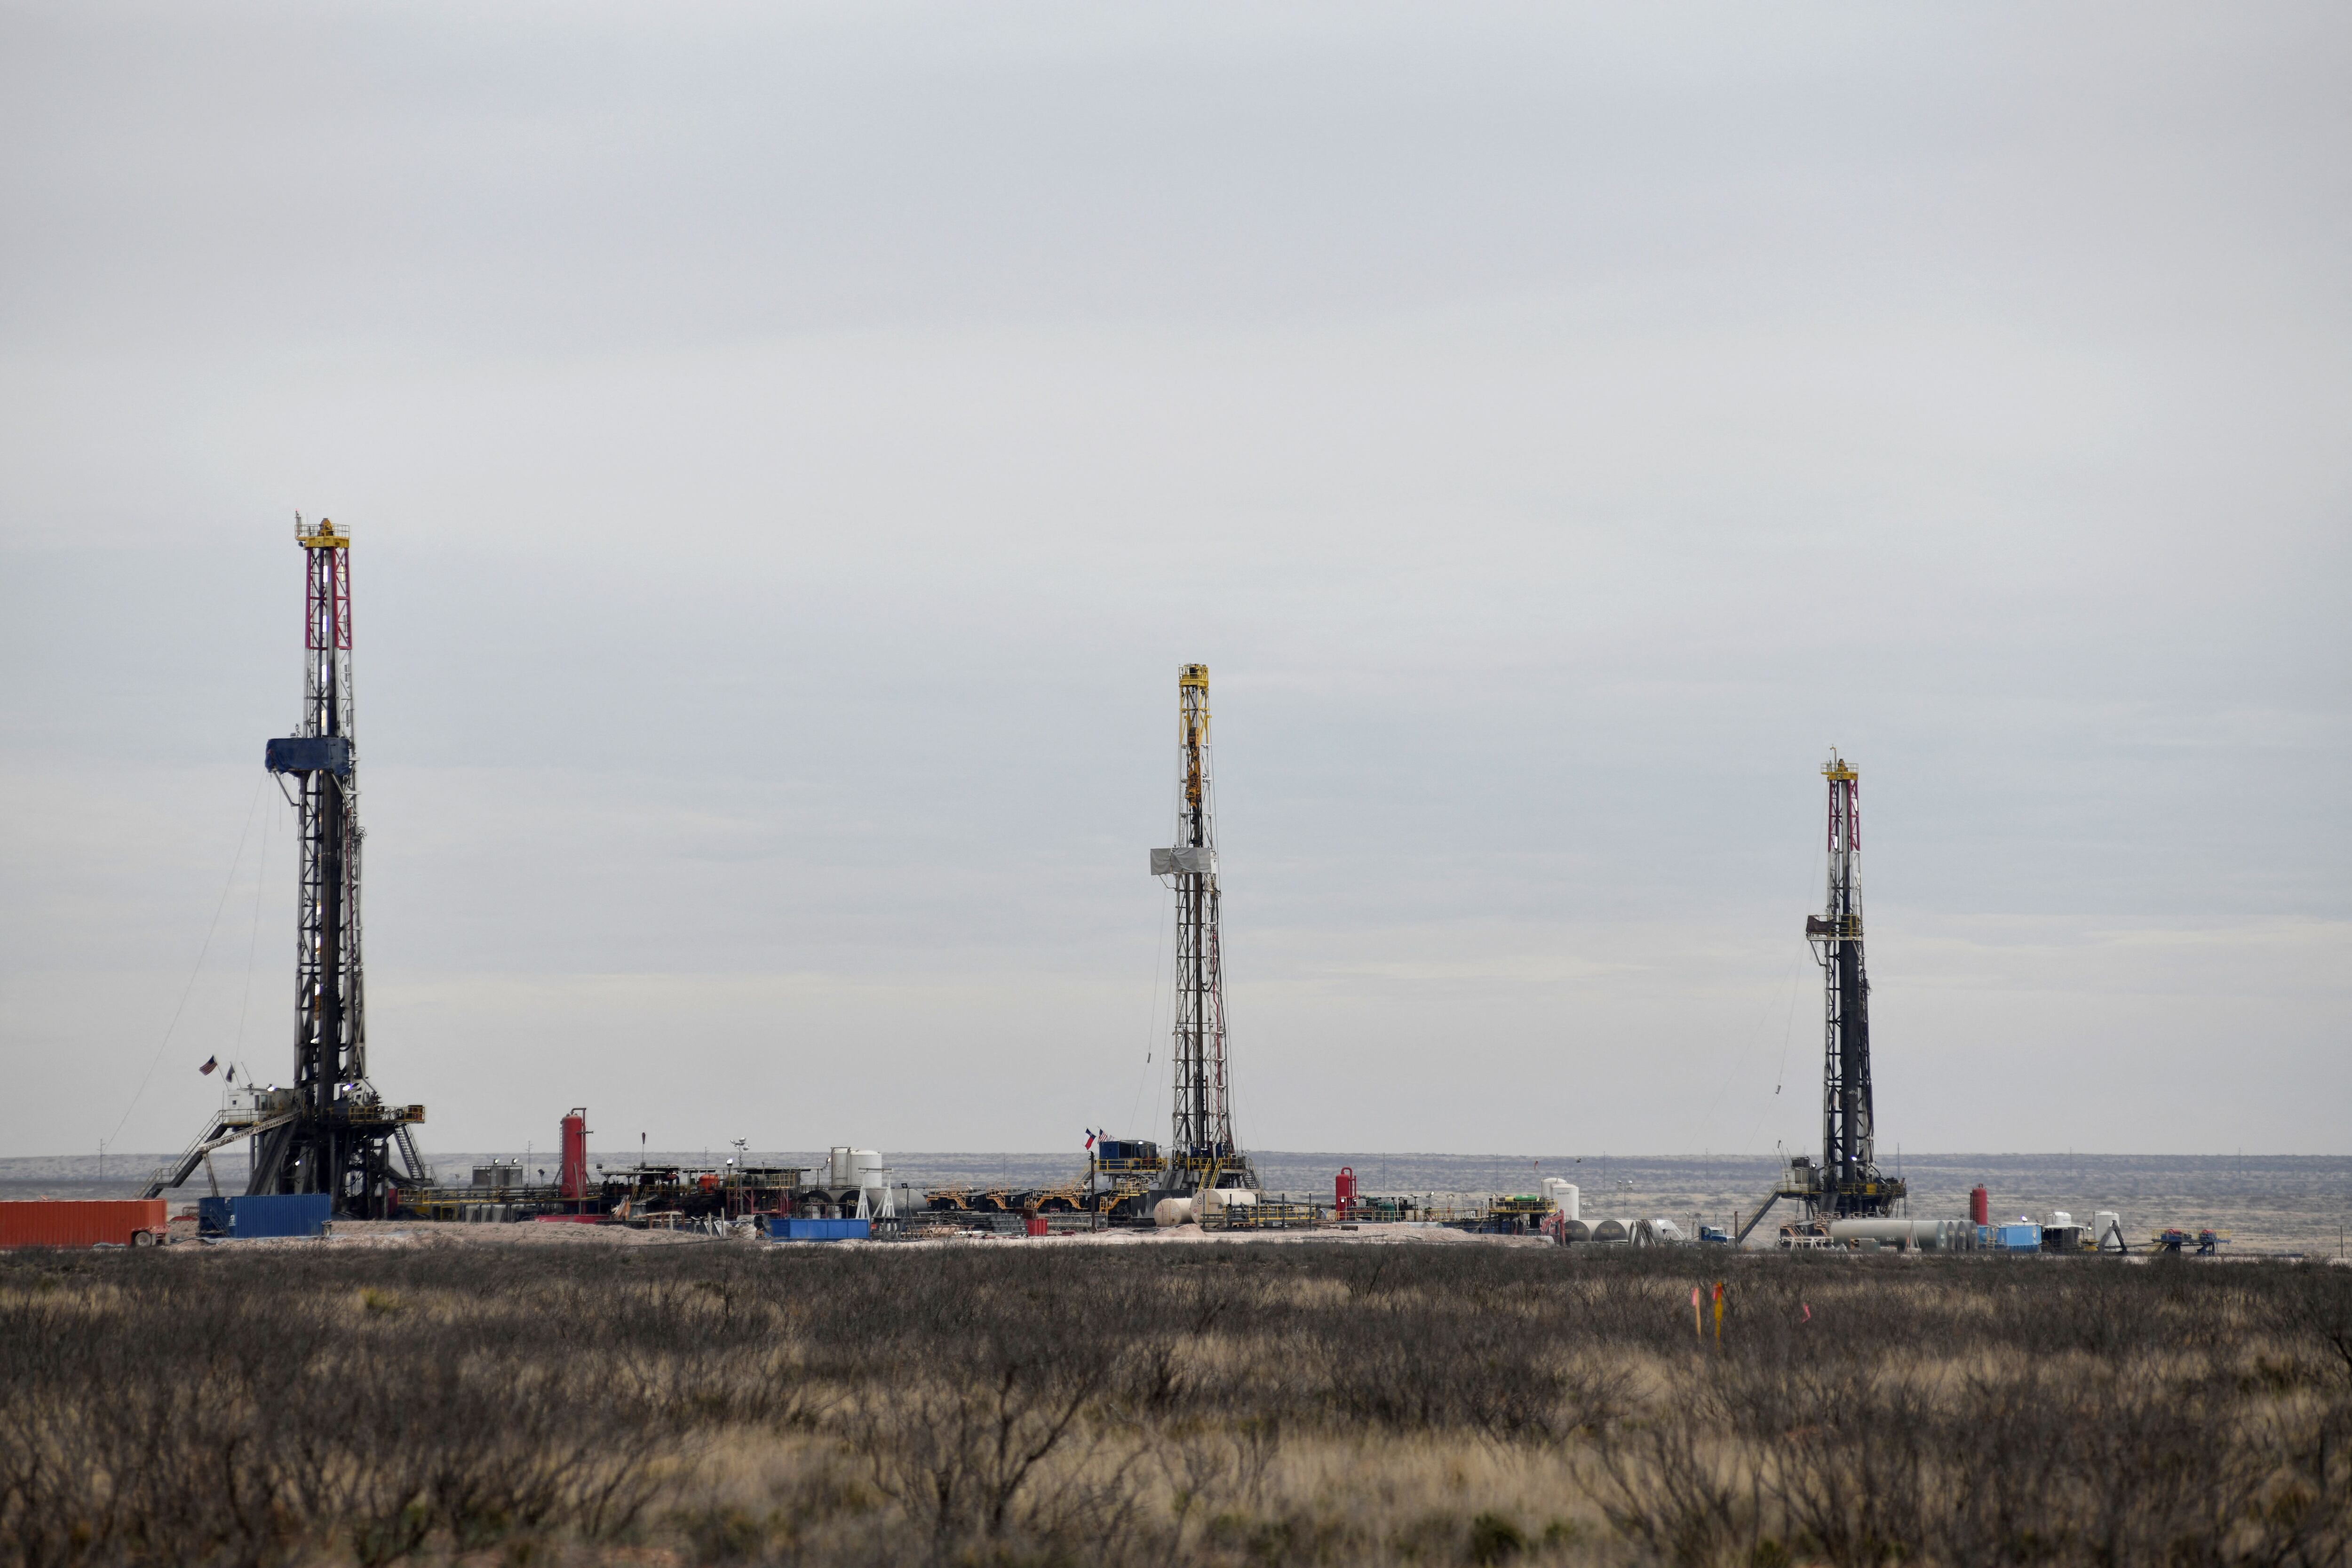 Equipos de perforación operan en la zona de producción de petróleo y gas natural de la cuenca del Pérmico, en el condado de Lea, Nuevo México, EEUU (REUTERS/Nick Oxford)